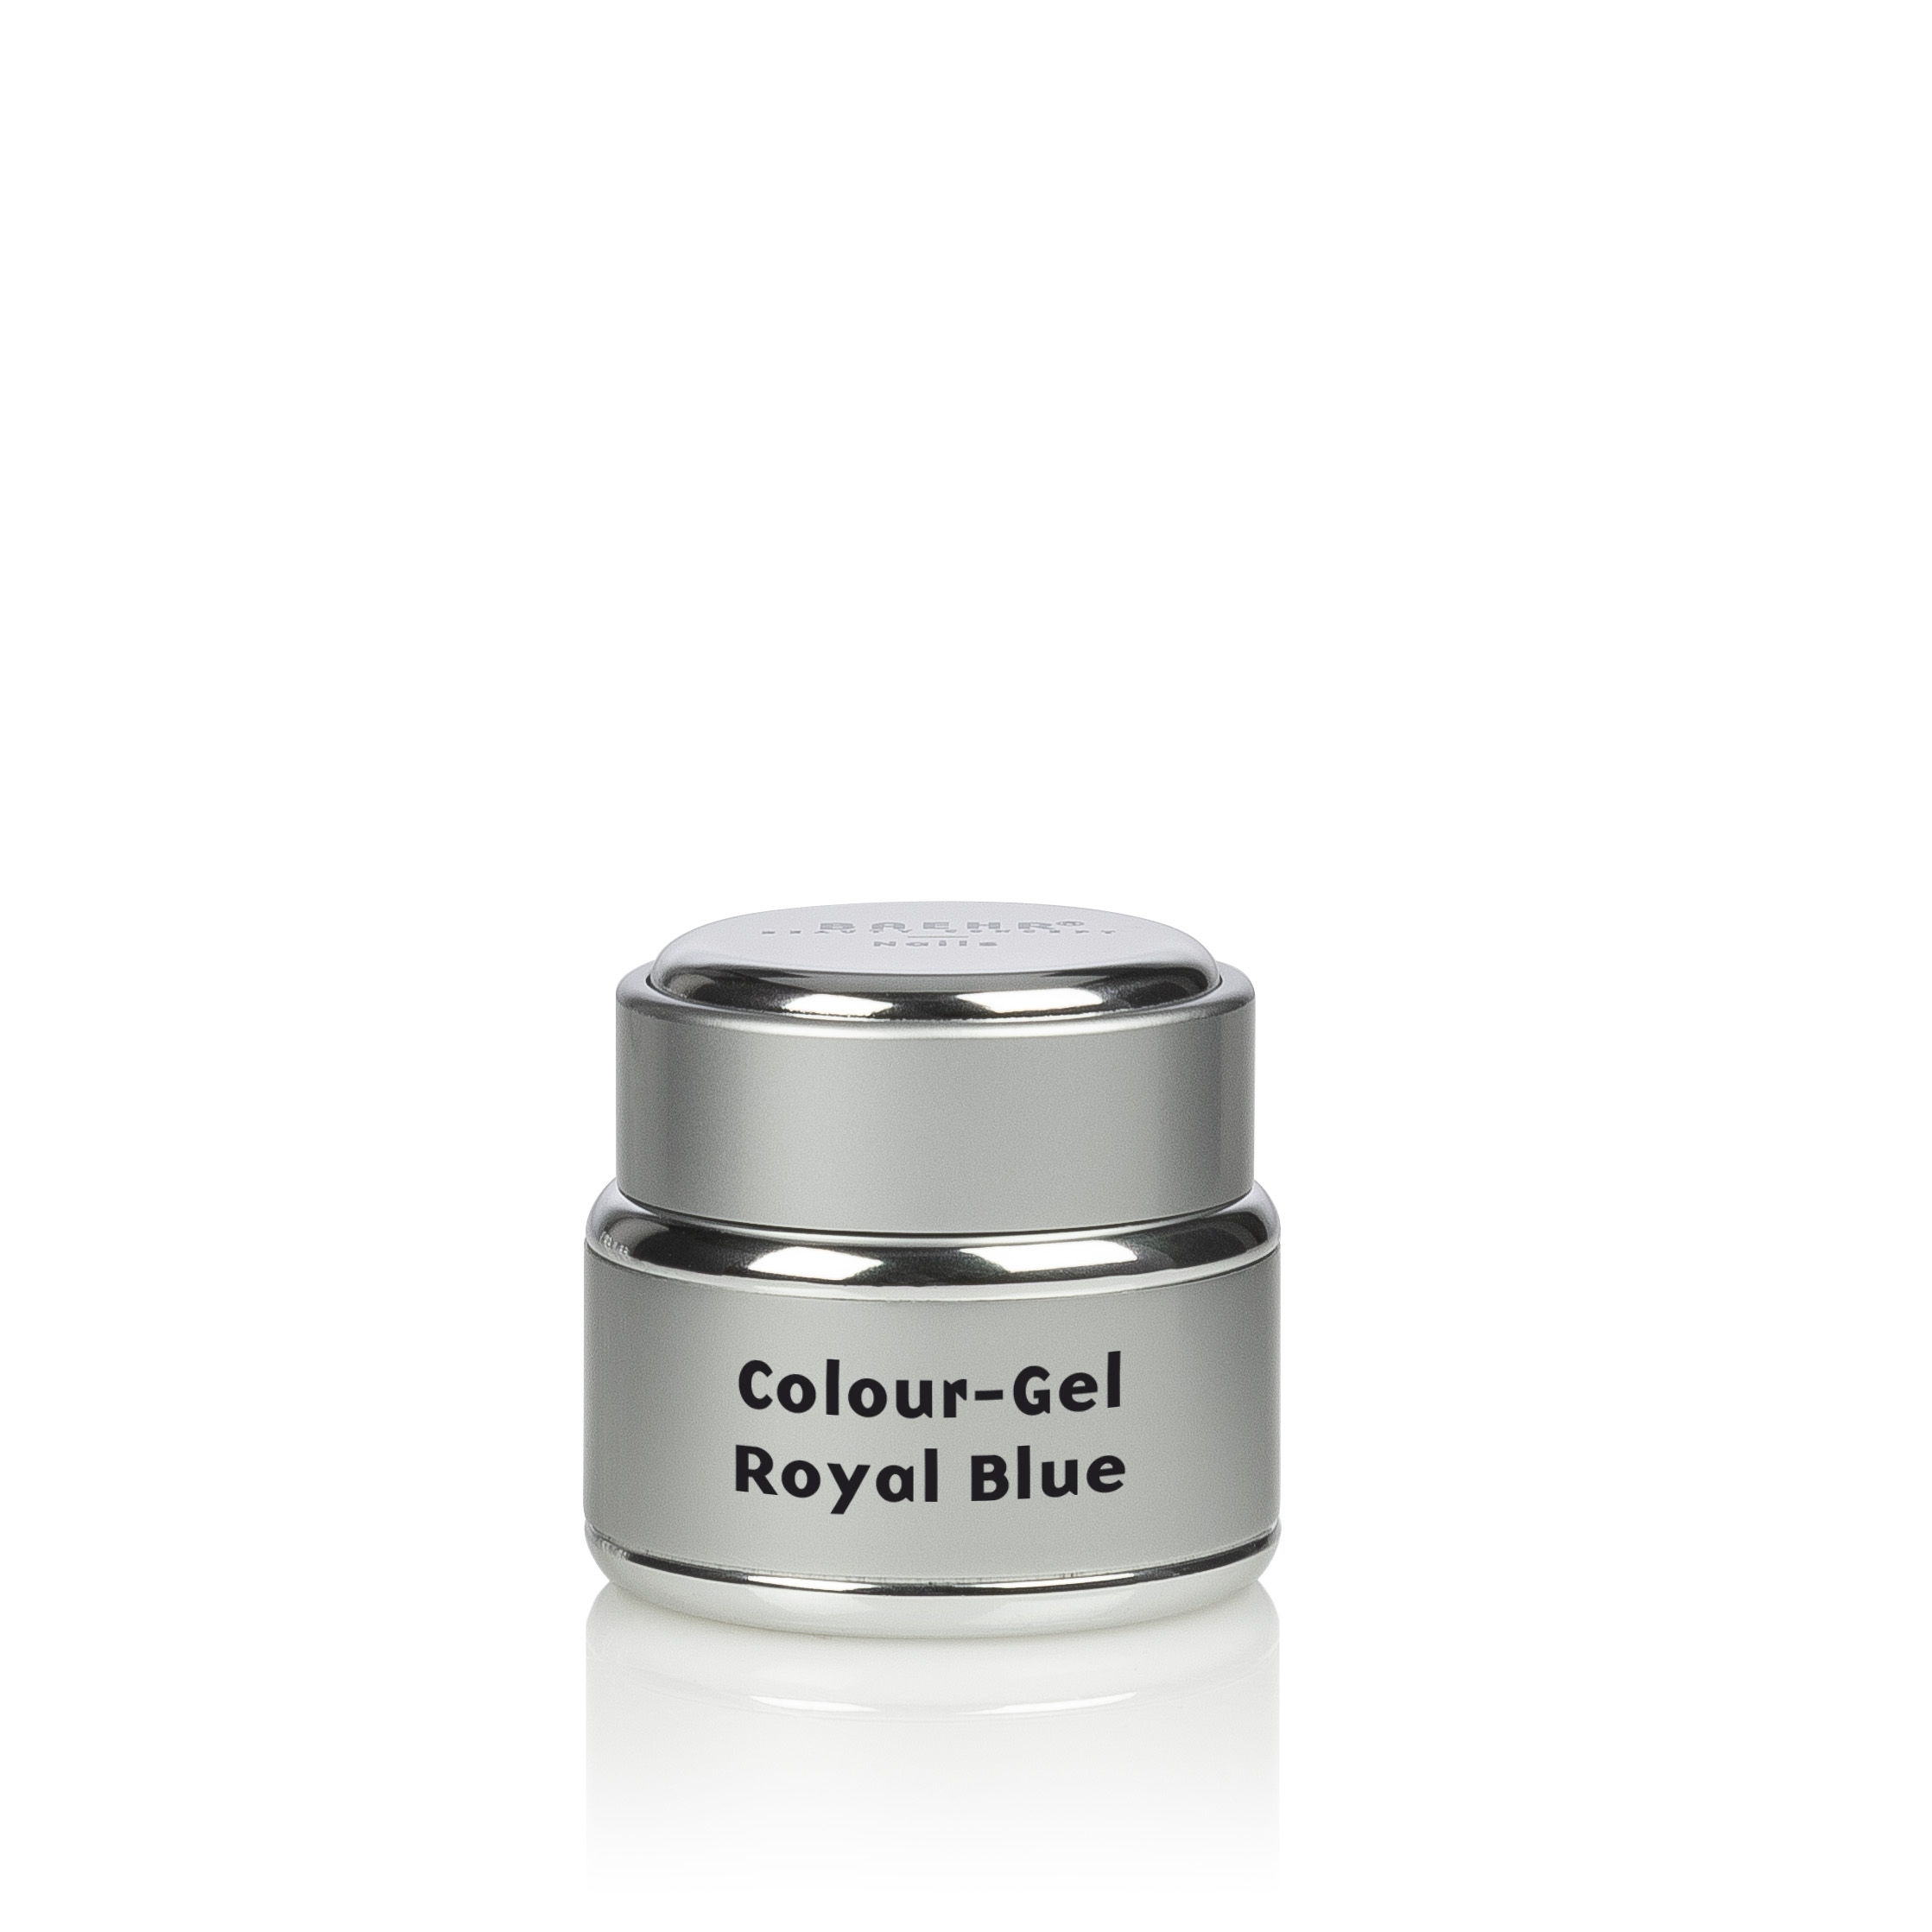 BAEHR BEAUTY CONCEPT - NAILS Colour-Gel Royal Blue 5 ml